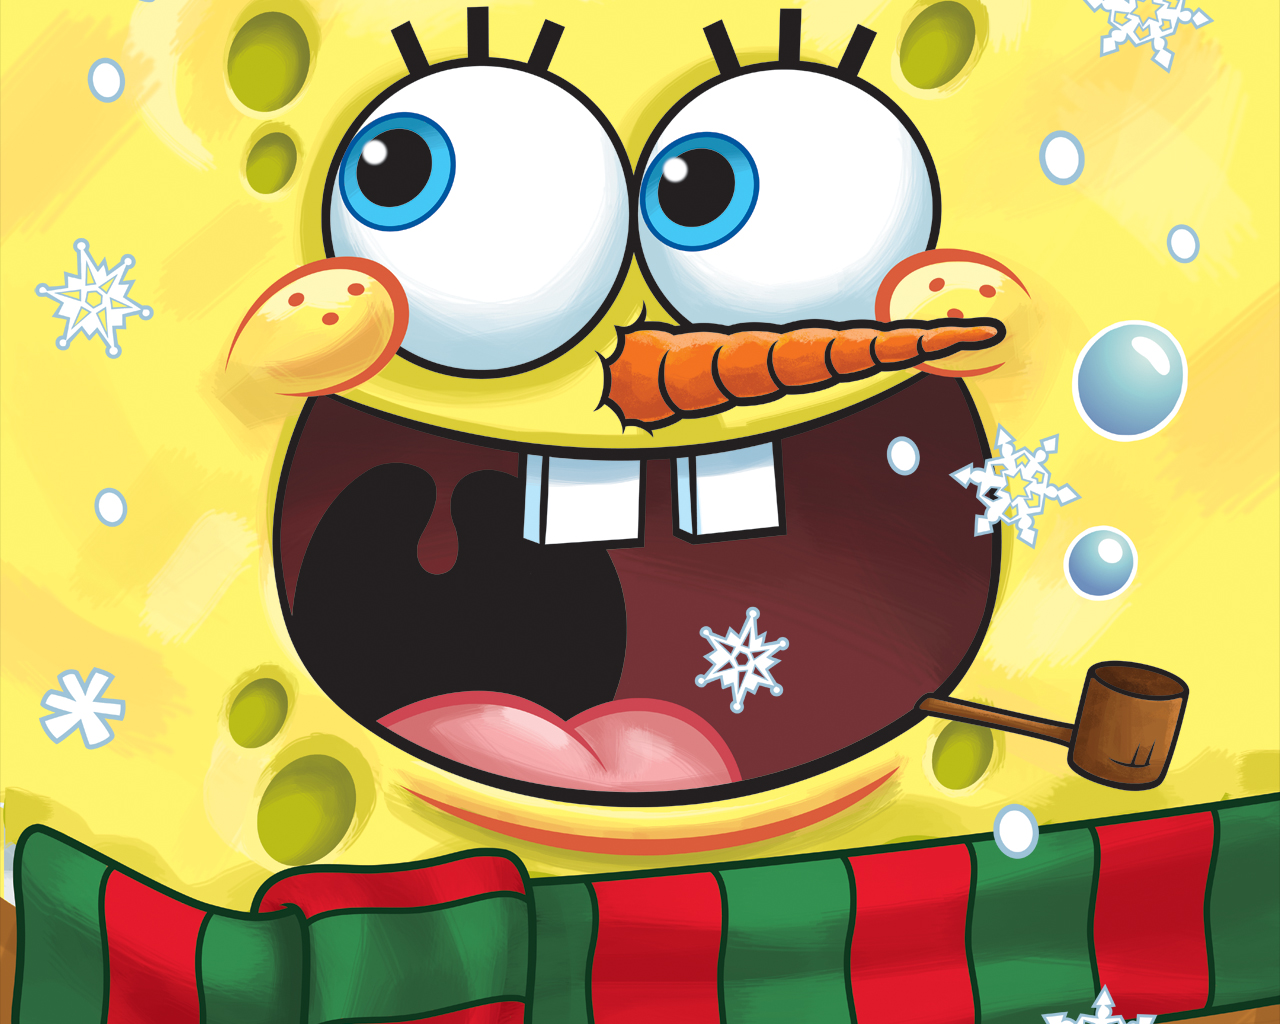 Spongebob Schwammkopf - Spongebob Squarepants Wallpaper 33903246